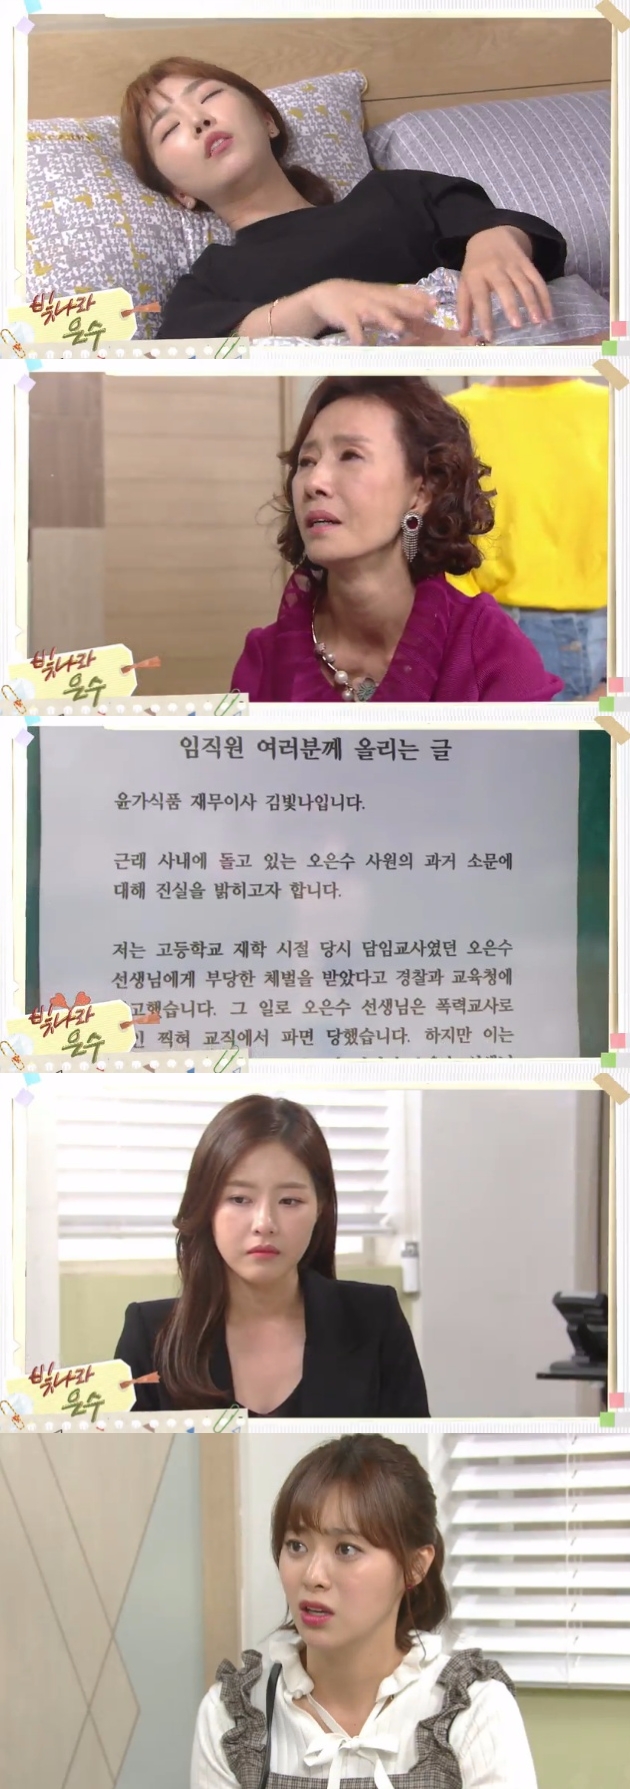 25일 밤 방송되는 KBS1TV 일일드라마 '빛나라 은수'124회에서 김빛나(박하나)는 8년 전 오은수(이영은) 사건에 대해 벽보를 통해 공개사과하는 장면이 그려진다. 